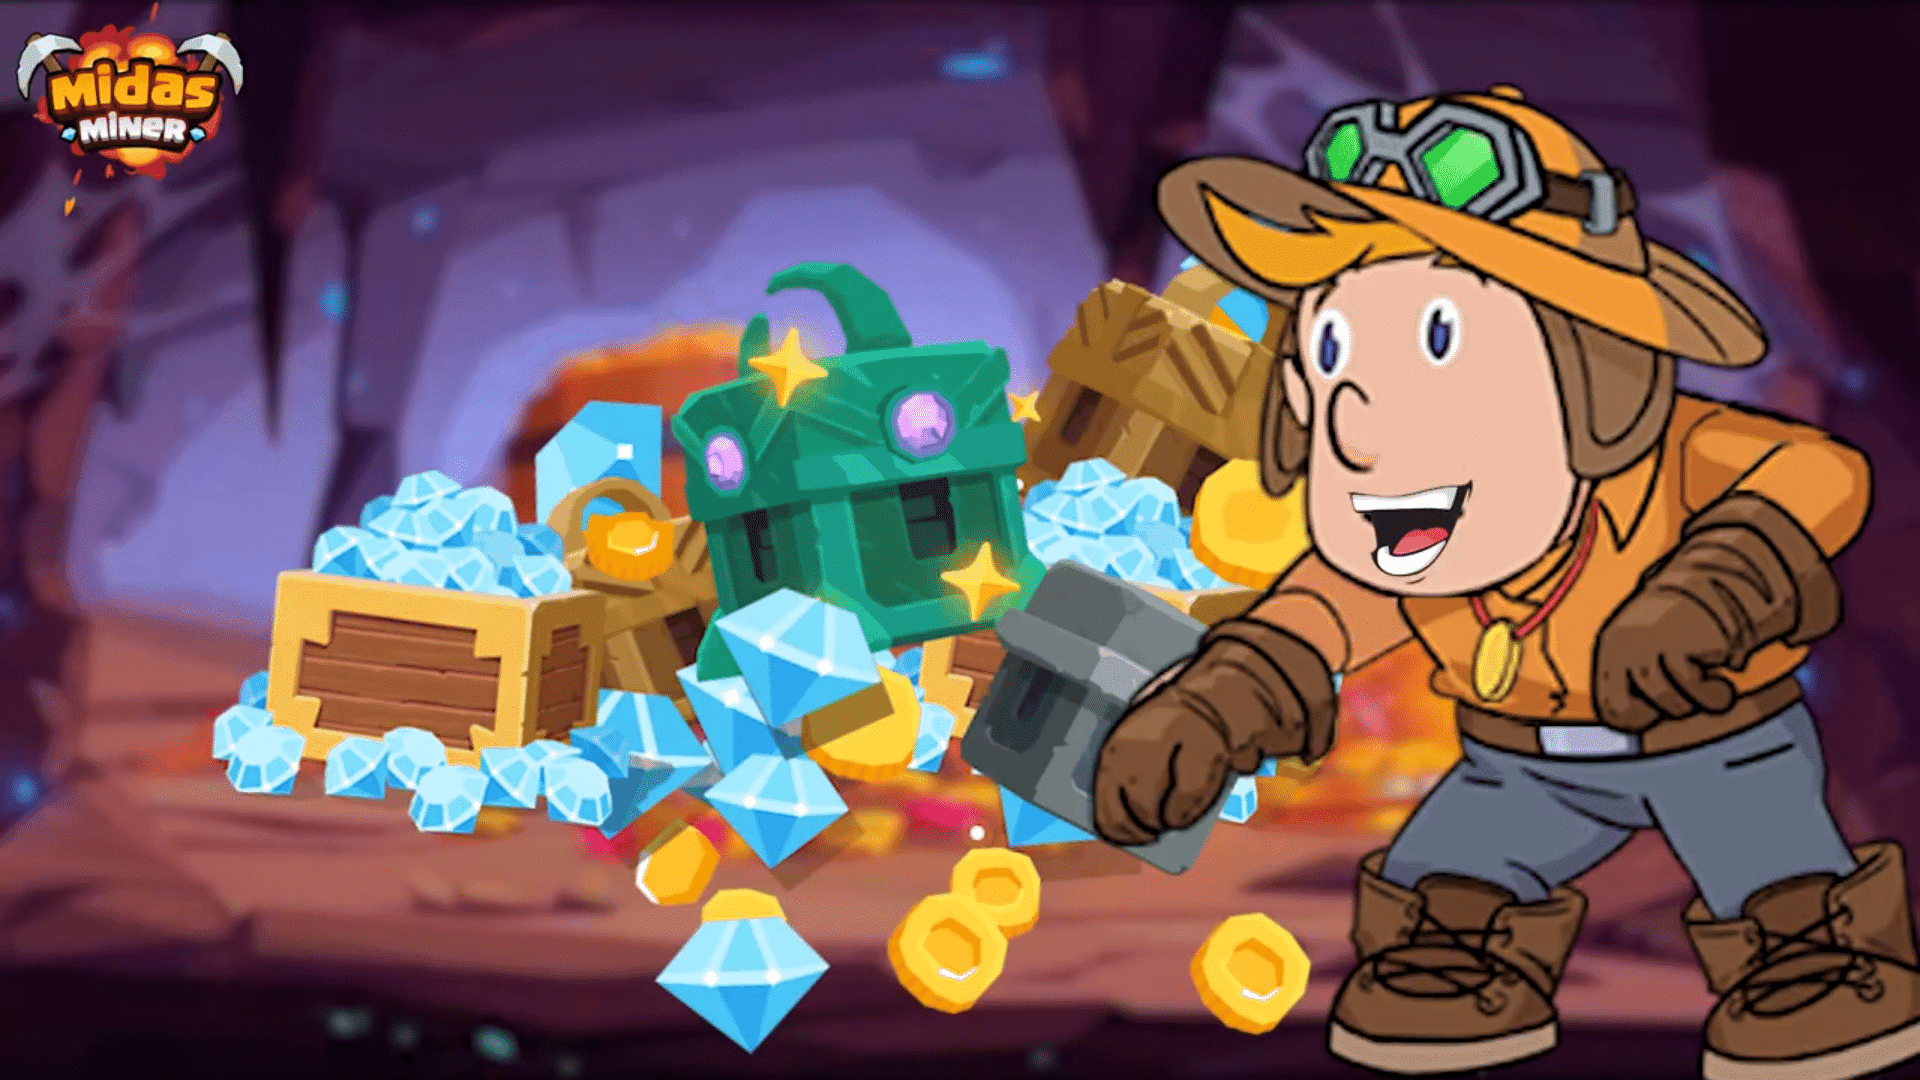 Midas Miner ist das führende Goldminenspiel auf Binance Smart Chain und bietet NFT-Gegenstände und ein lohnendes Spiel-zu-Verdienen-Erlebnis.